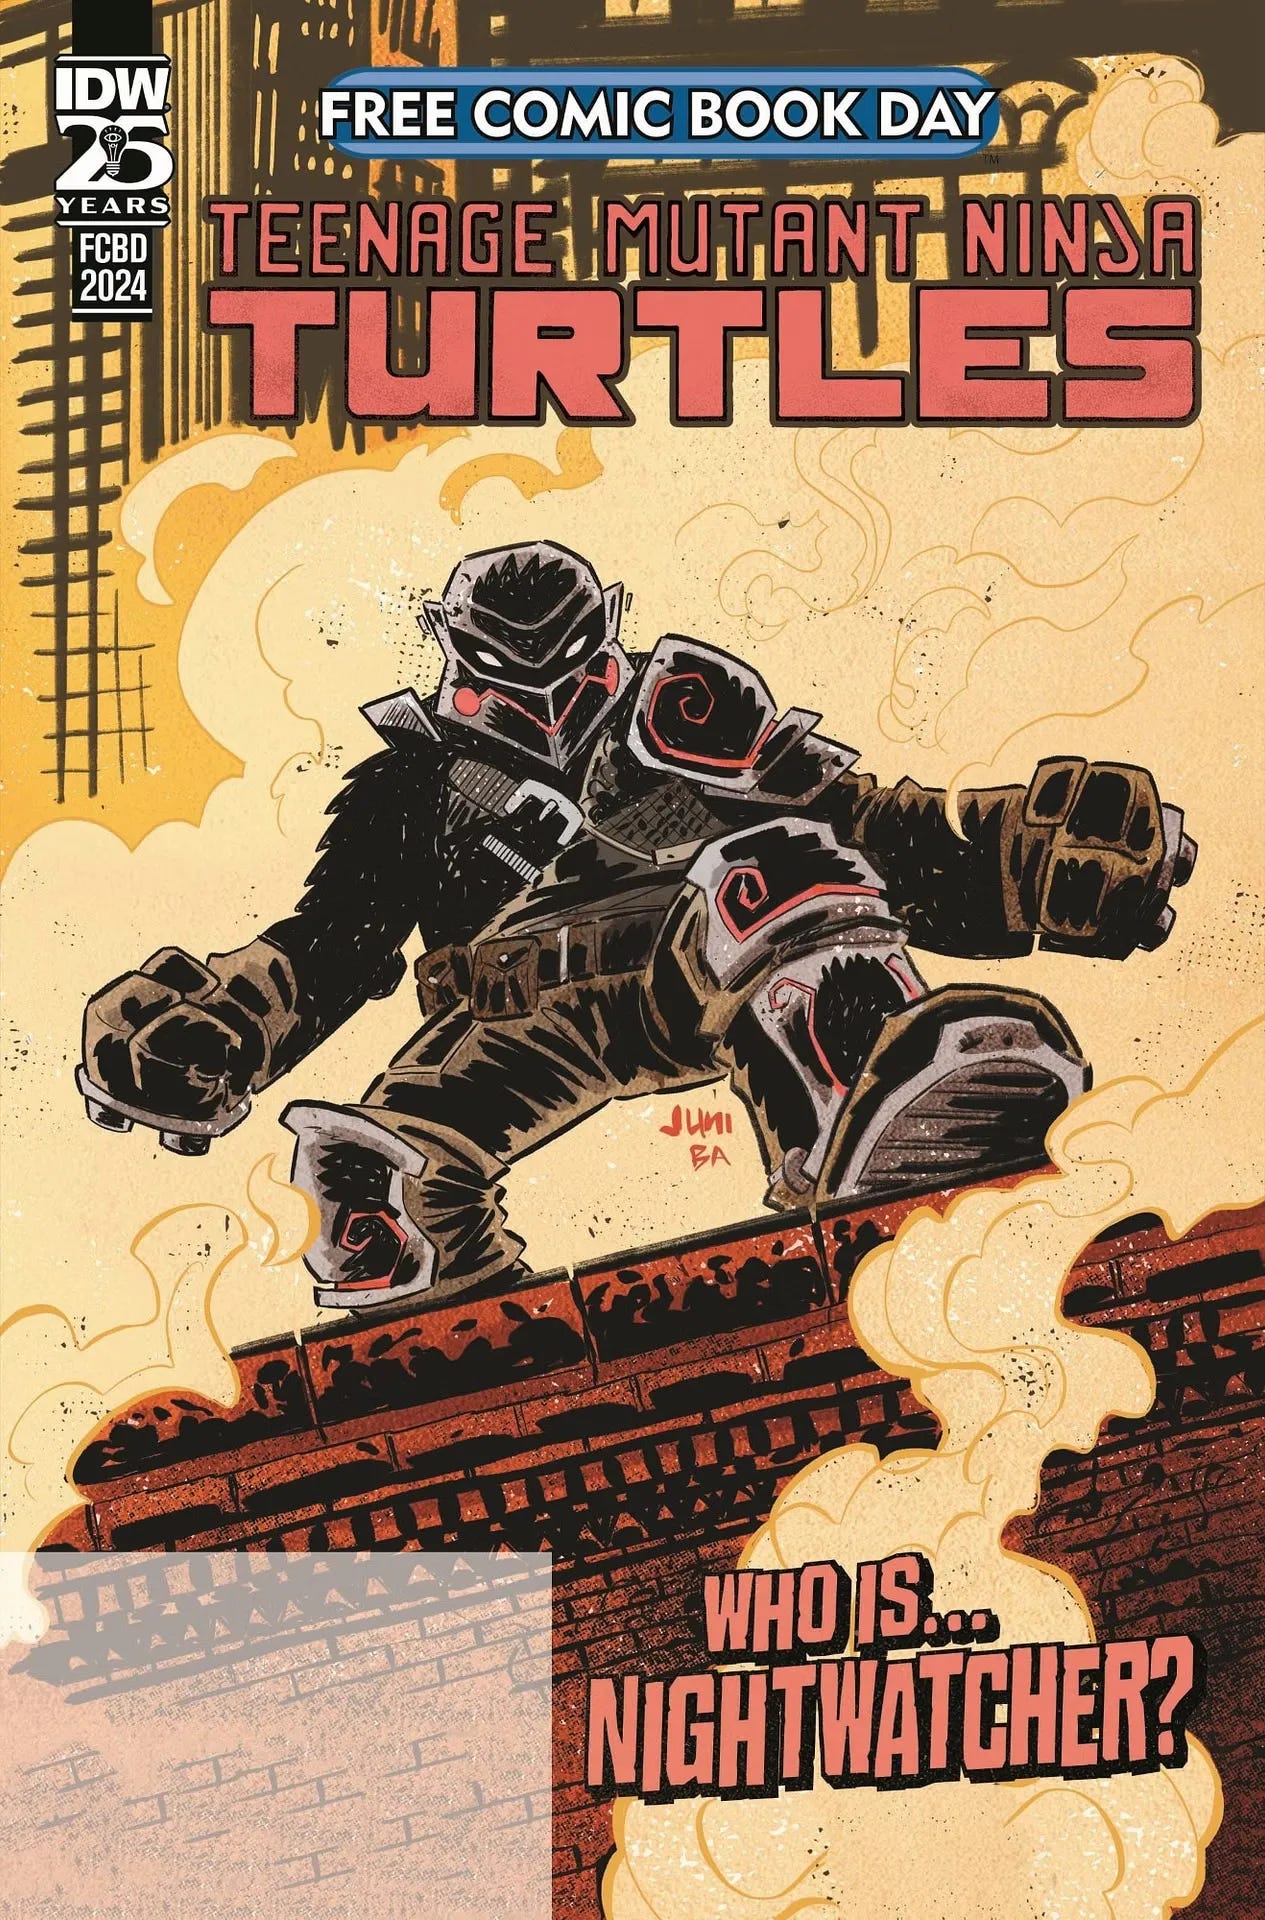 Couverture du FCBD Teenage Mutant Ninja Turtles